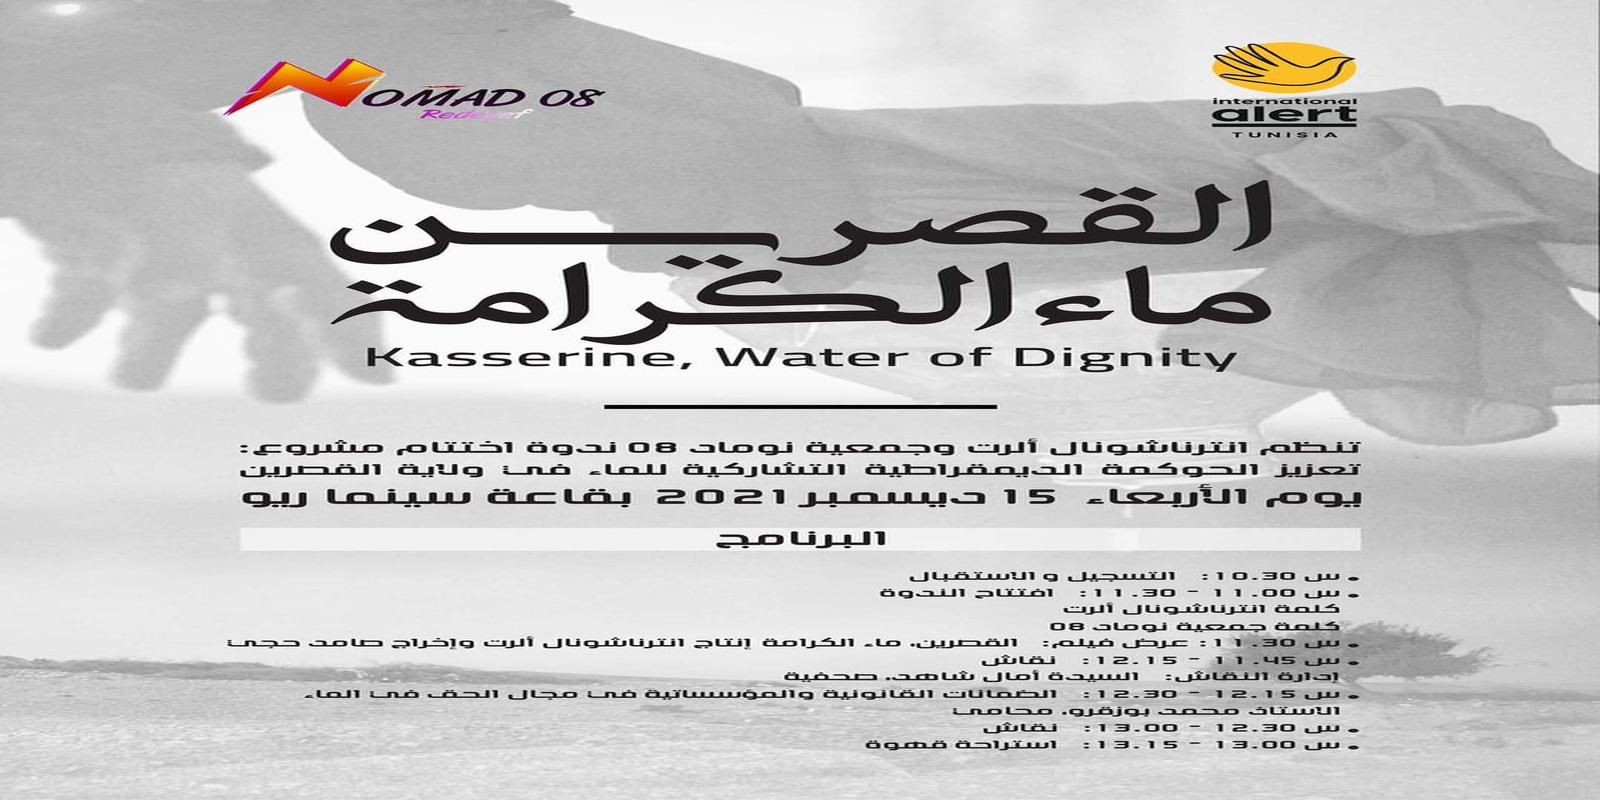 Clôture de projet : Promouvoir une gouvernance démocratique et participative de l’eau dans le gouvernorat de Kasserine